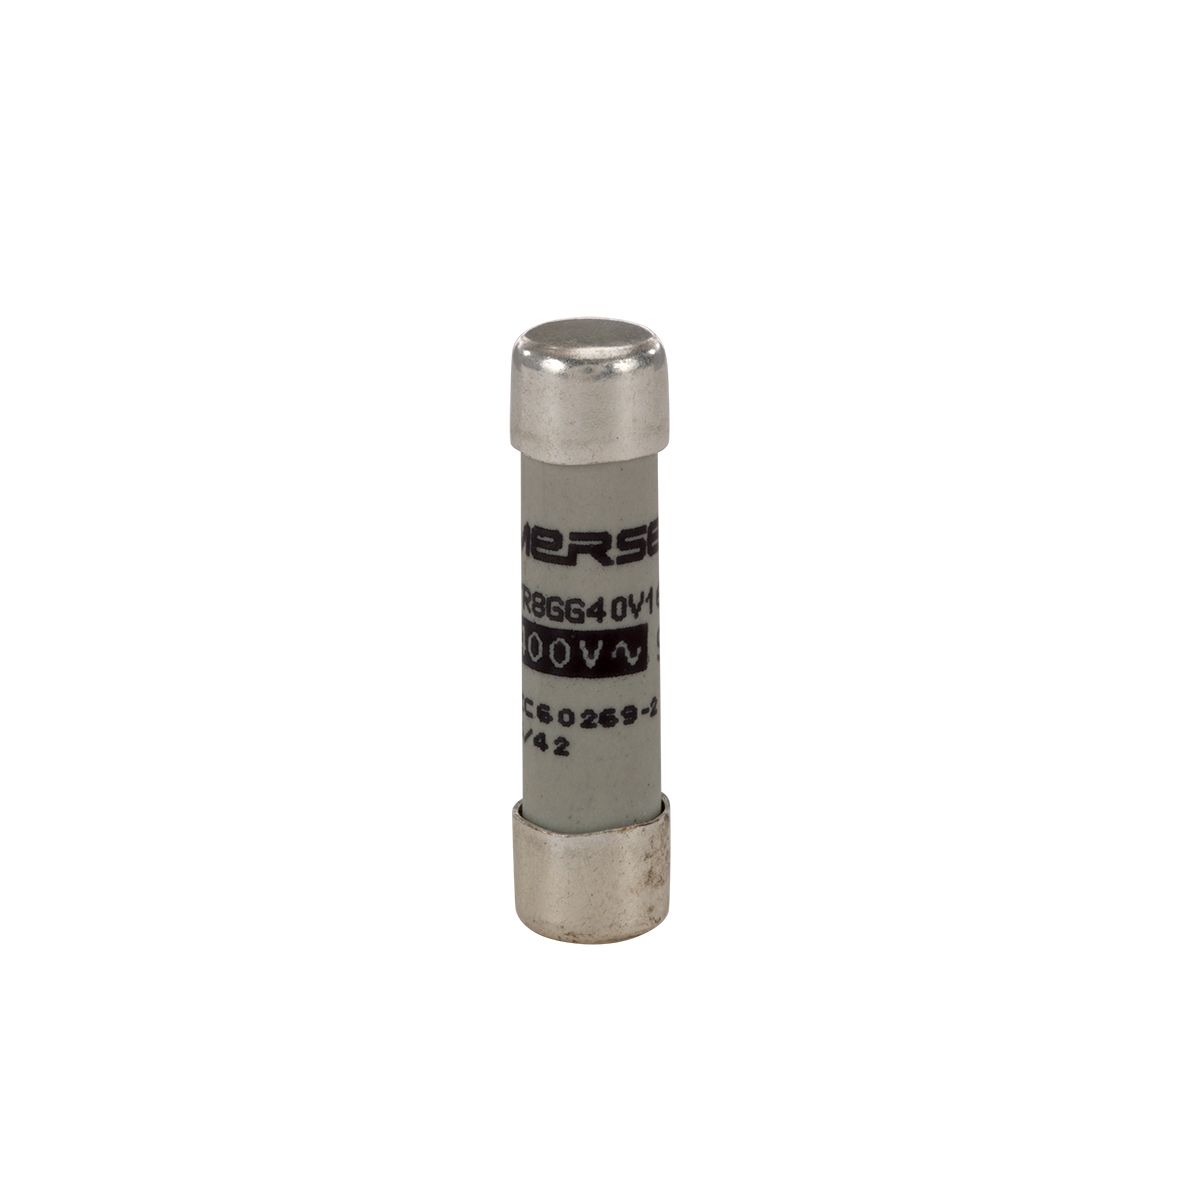 W201292 - Cylindrical fuse-link aM 400VAC 8.5x31.5, 10A